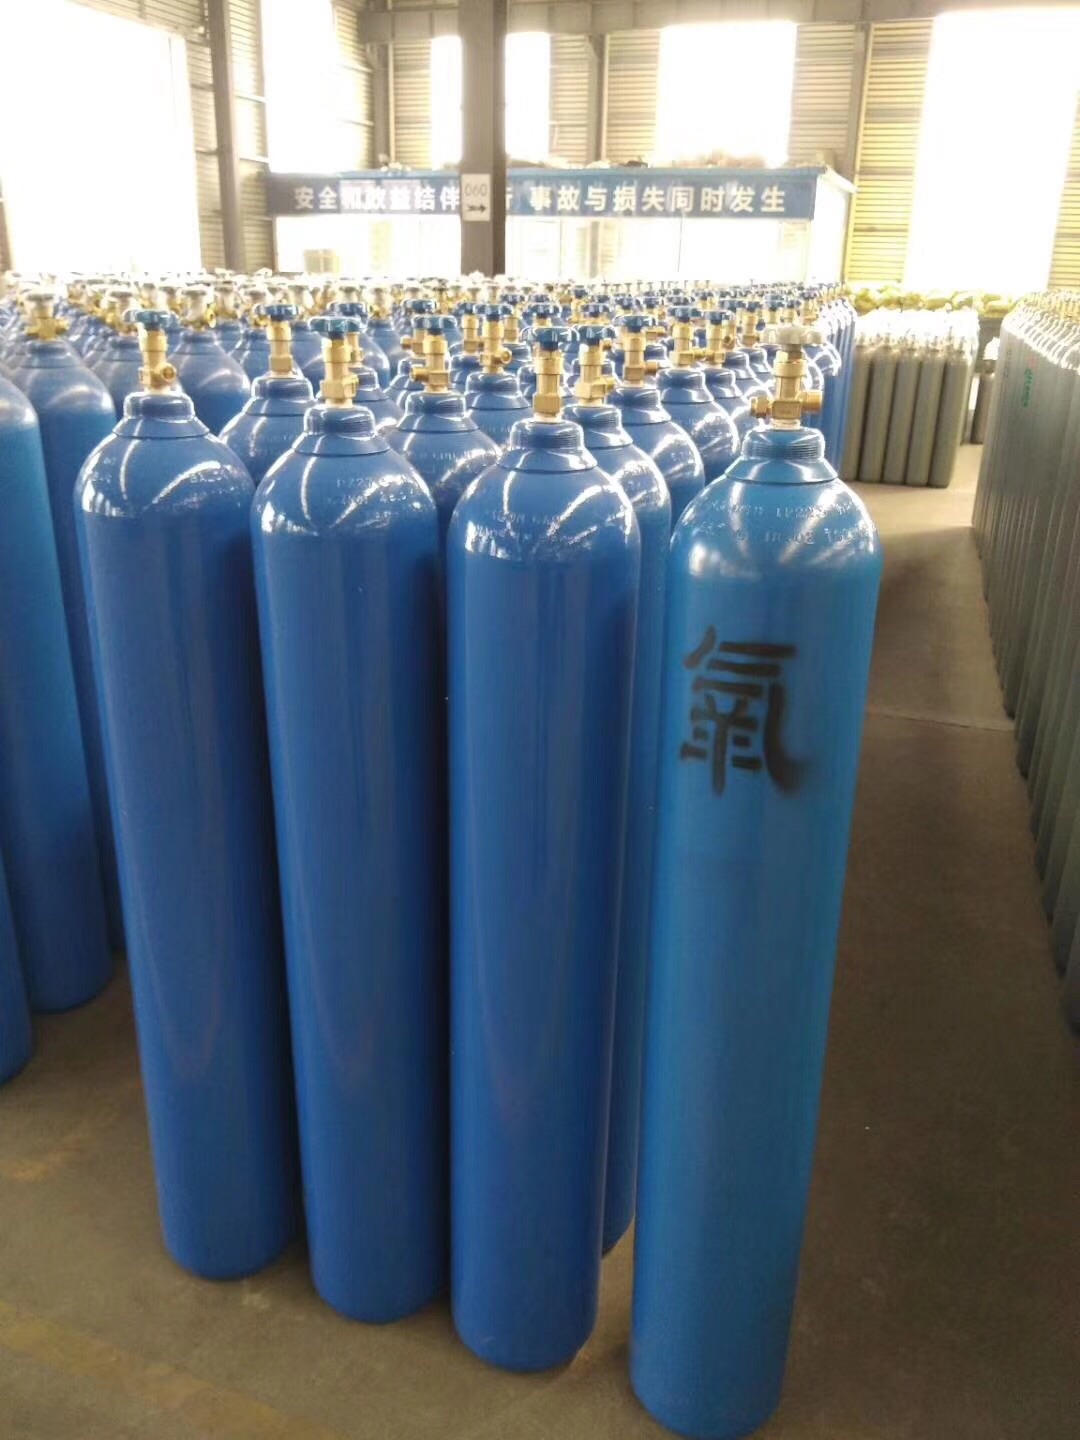 大朗40L氧气规格 工业氧气 应用范围广泛